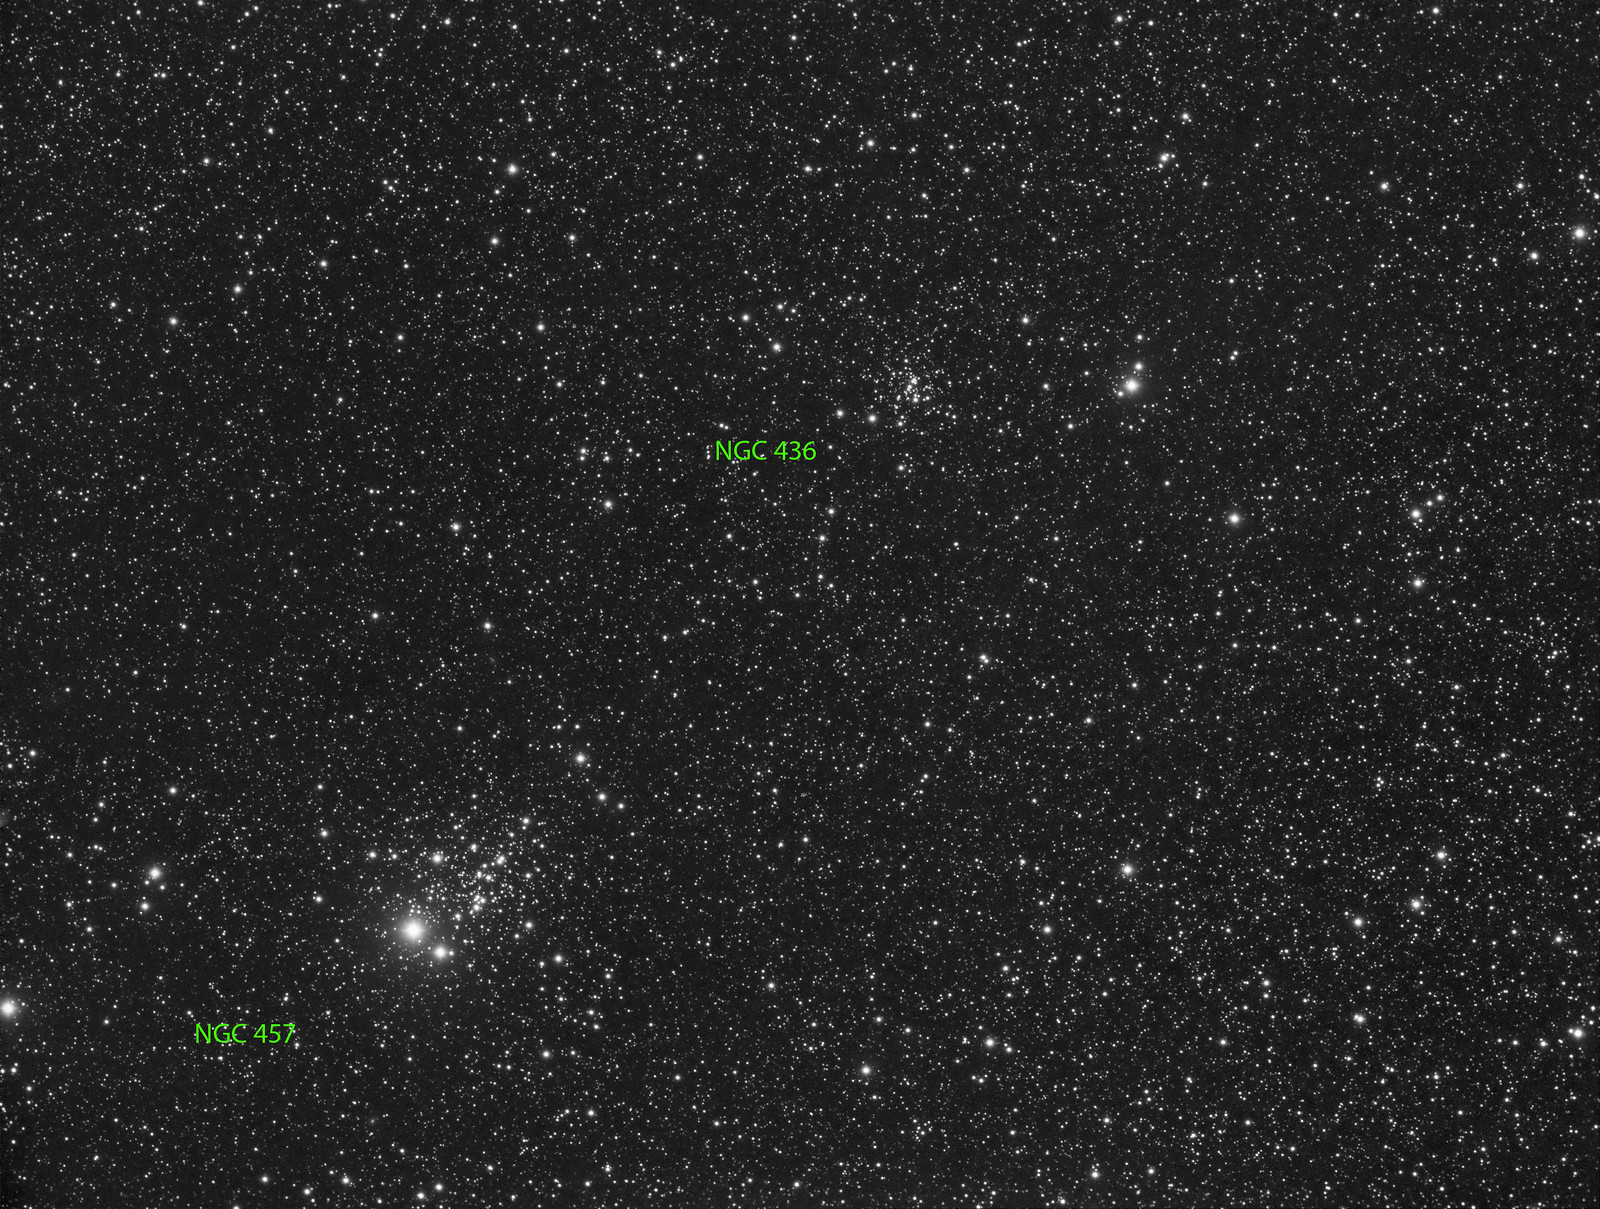 013 - NGC 457 - Luminance